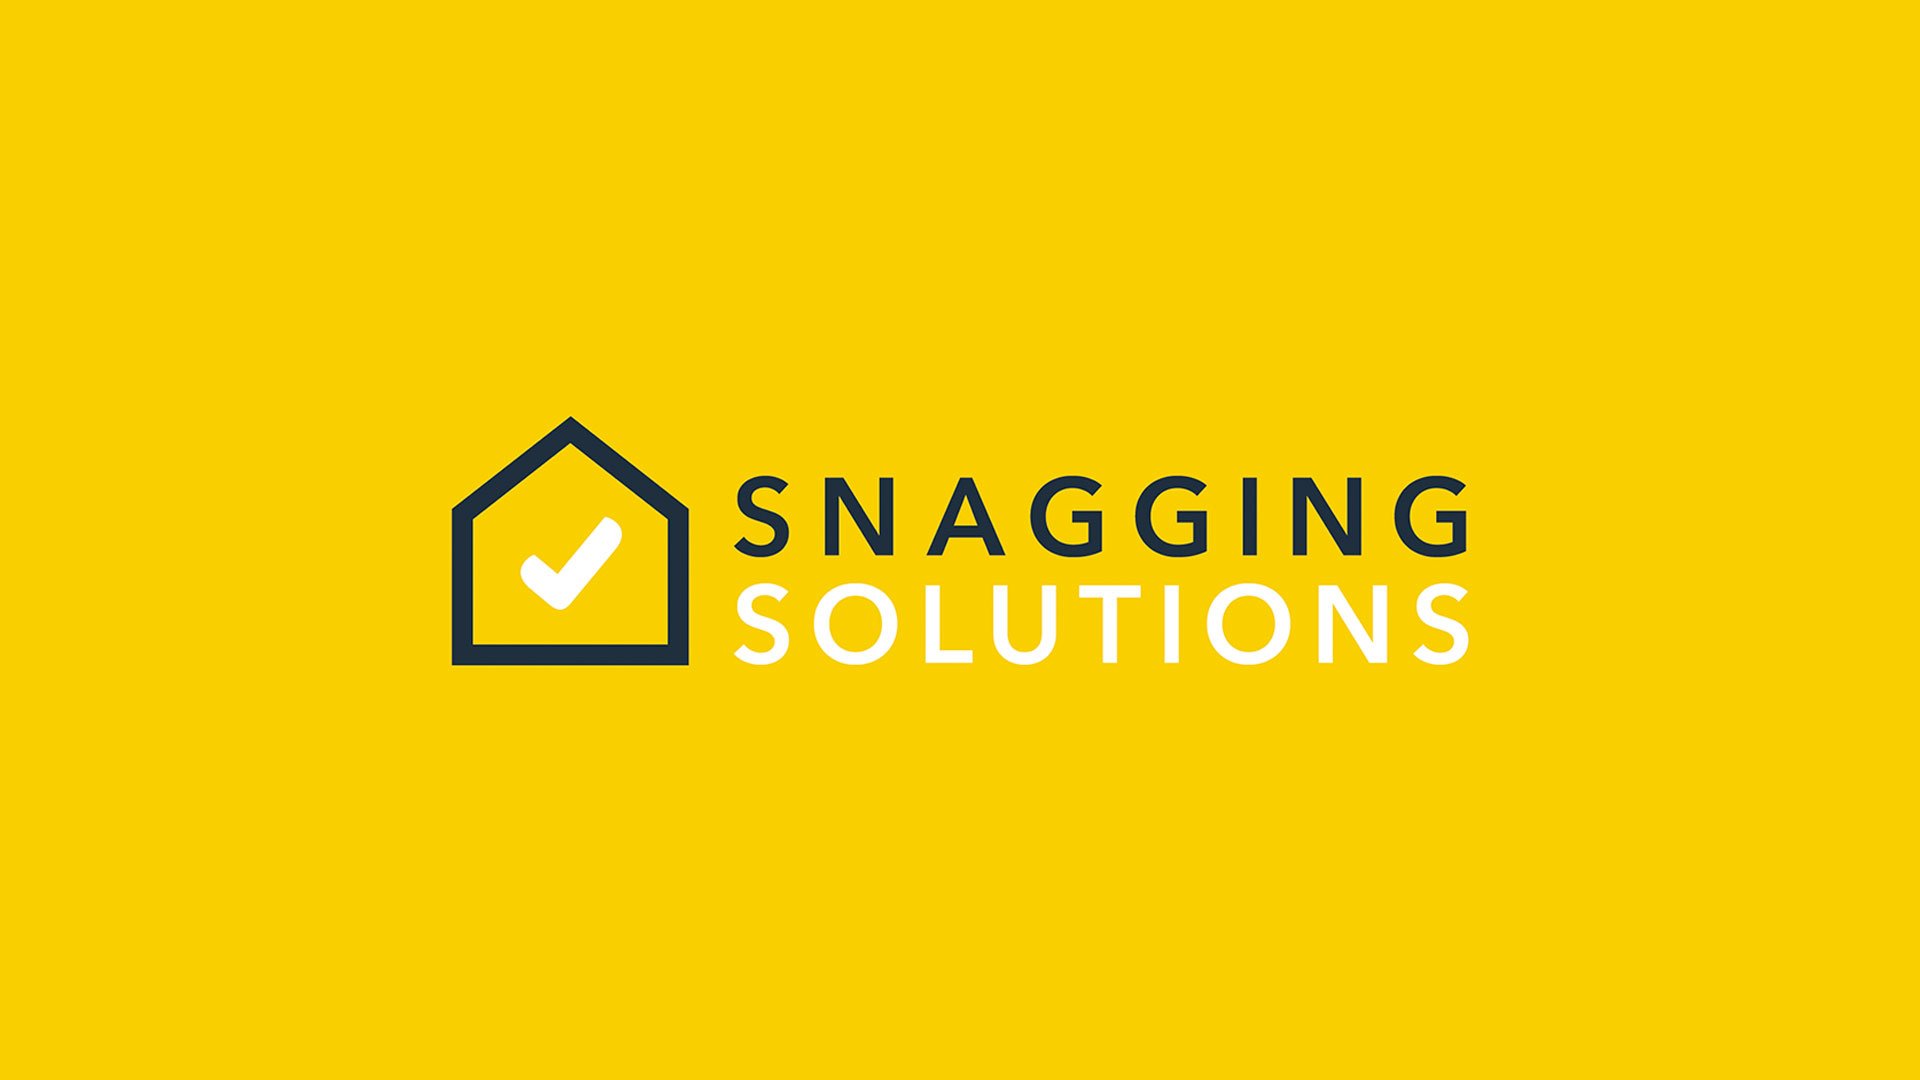 SnaggingSolutions_1920x1080-logo.jpg